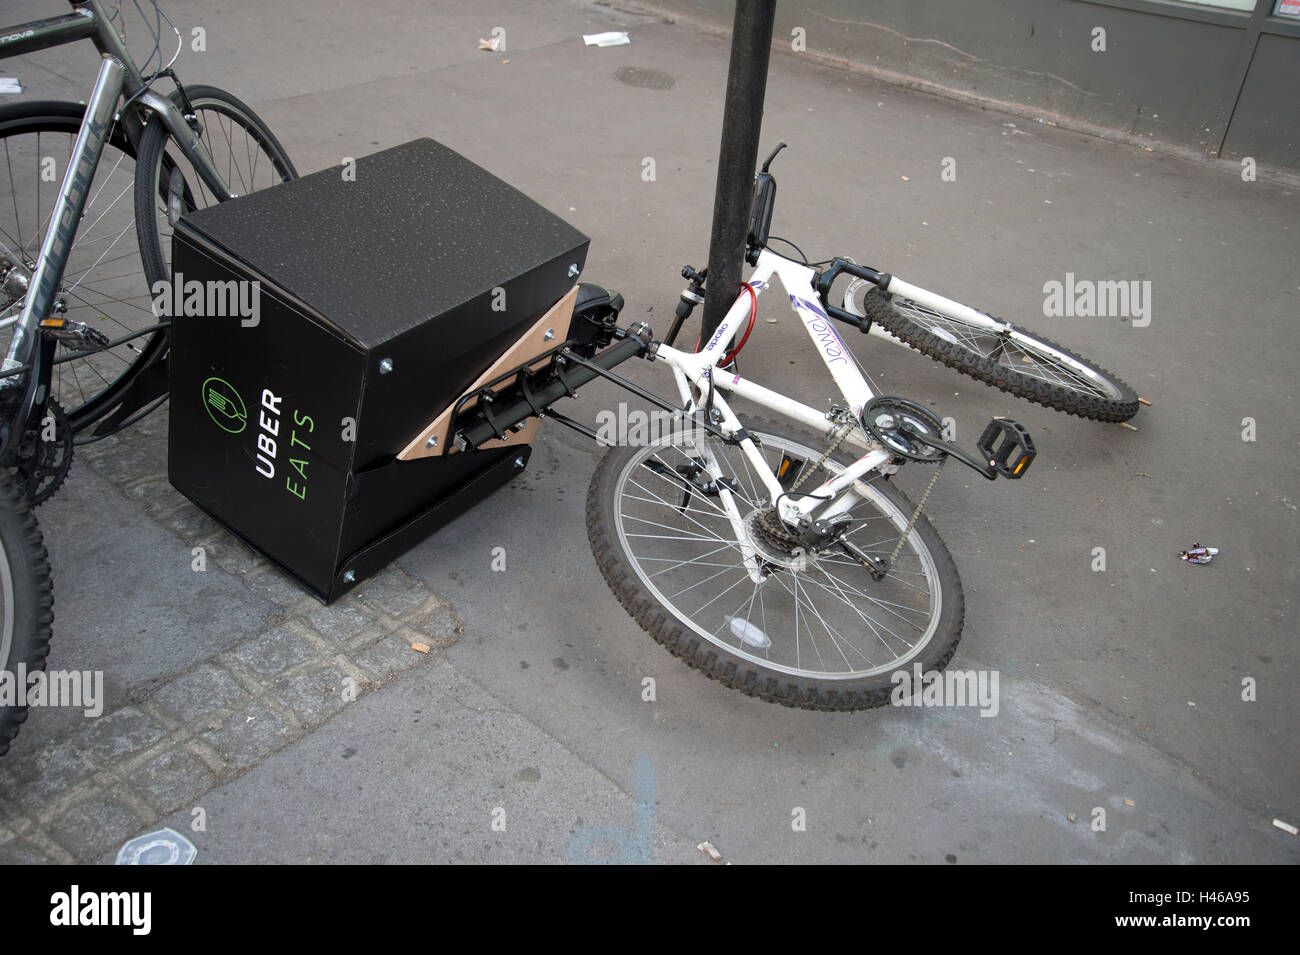 La gare de Liverpool Street à Londres. Uber mange vélo livraison chuté au et enchaîné à un lampadaire Banque D'Images